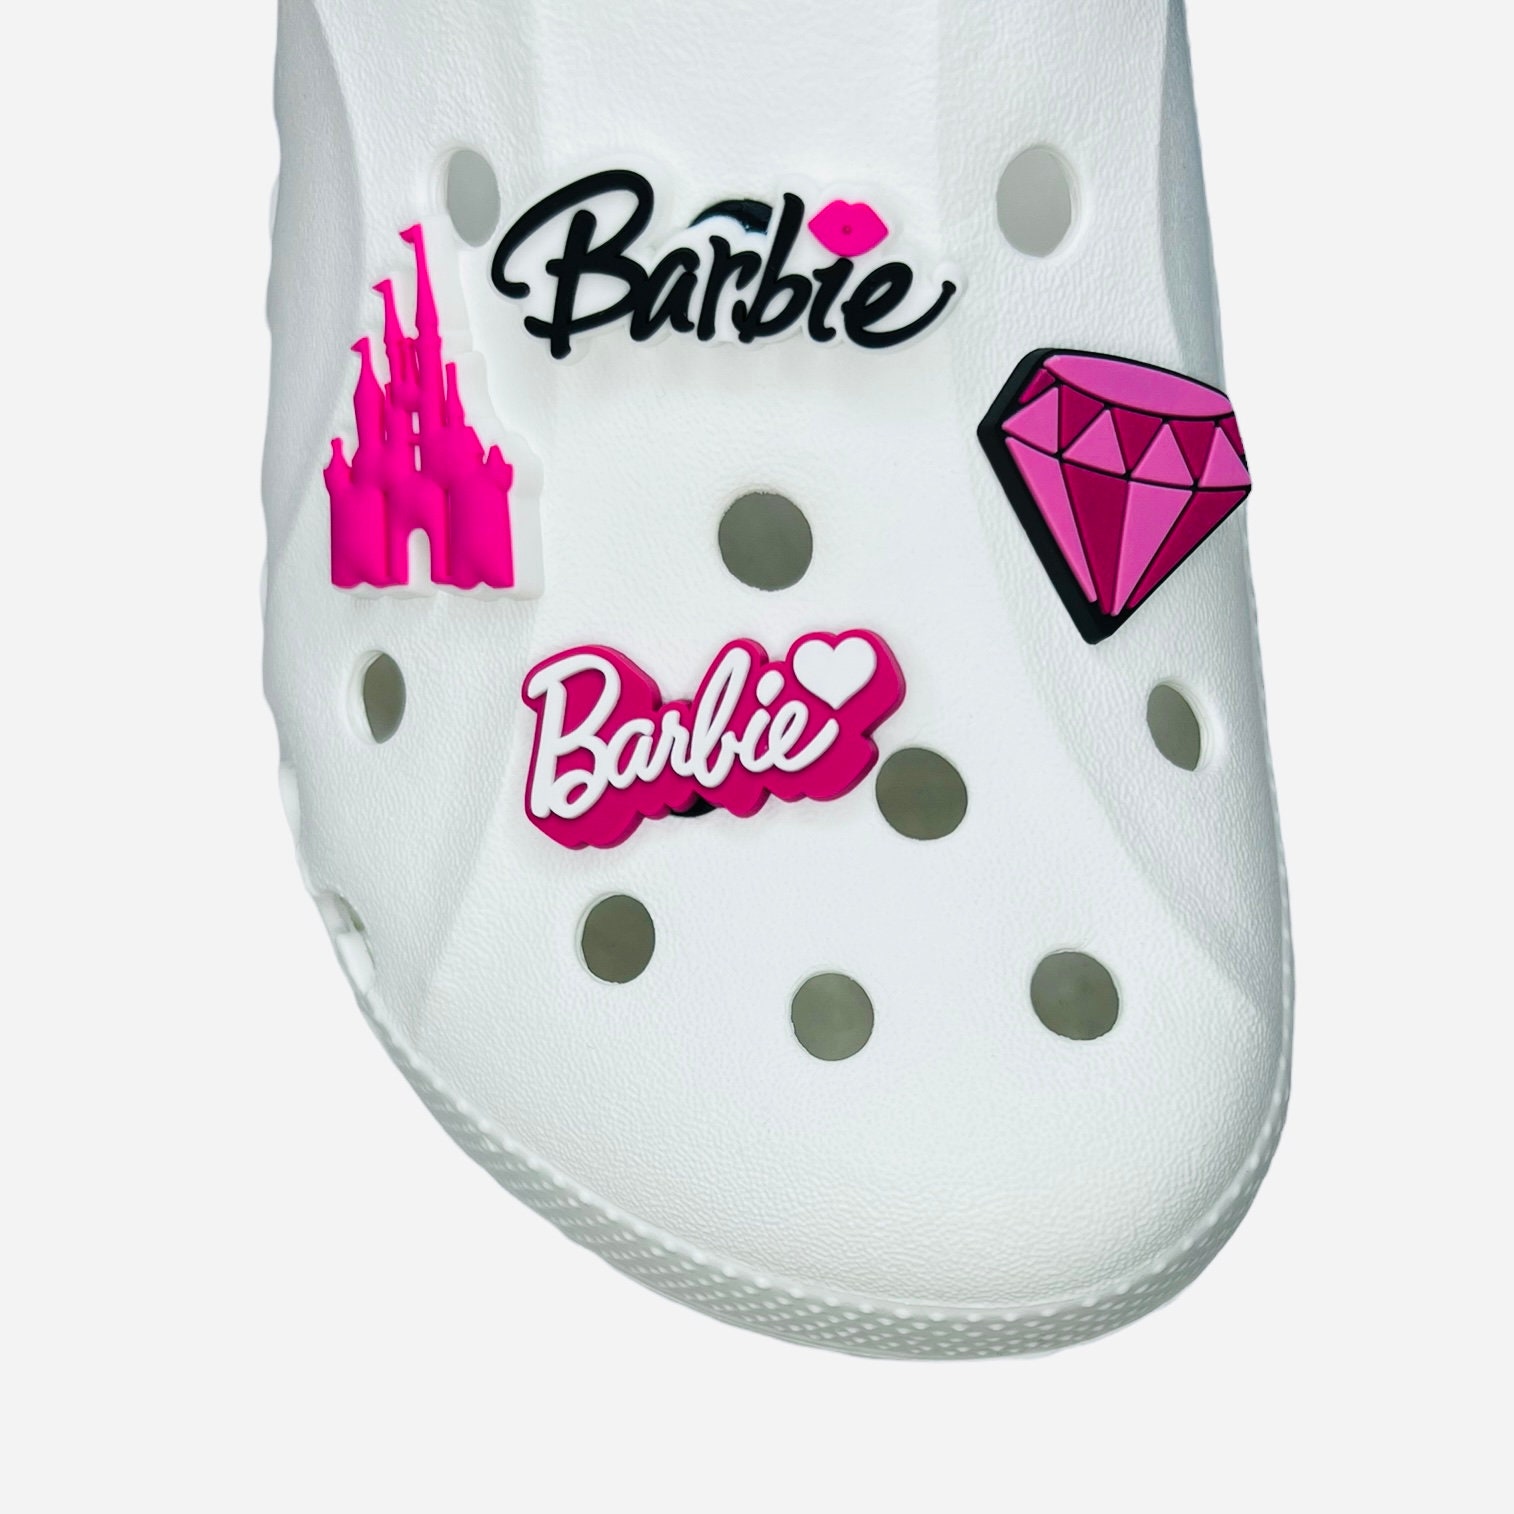 Barbie Shoe Charm